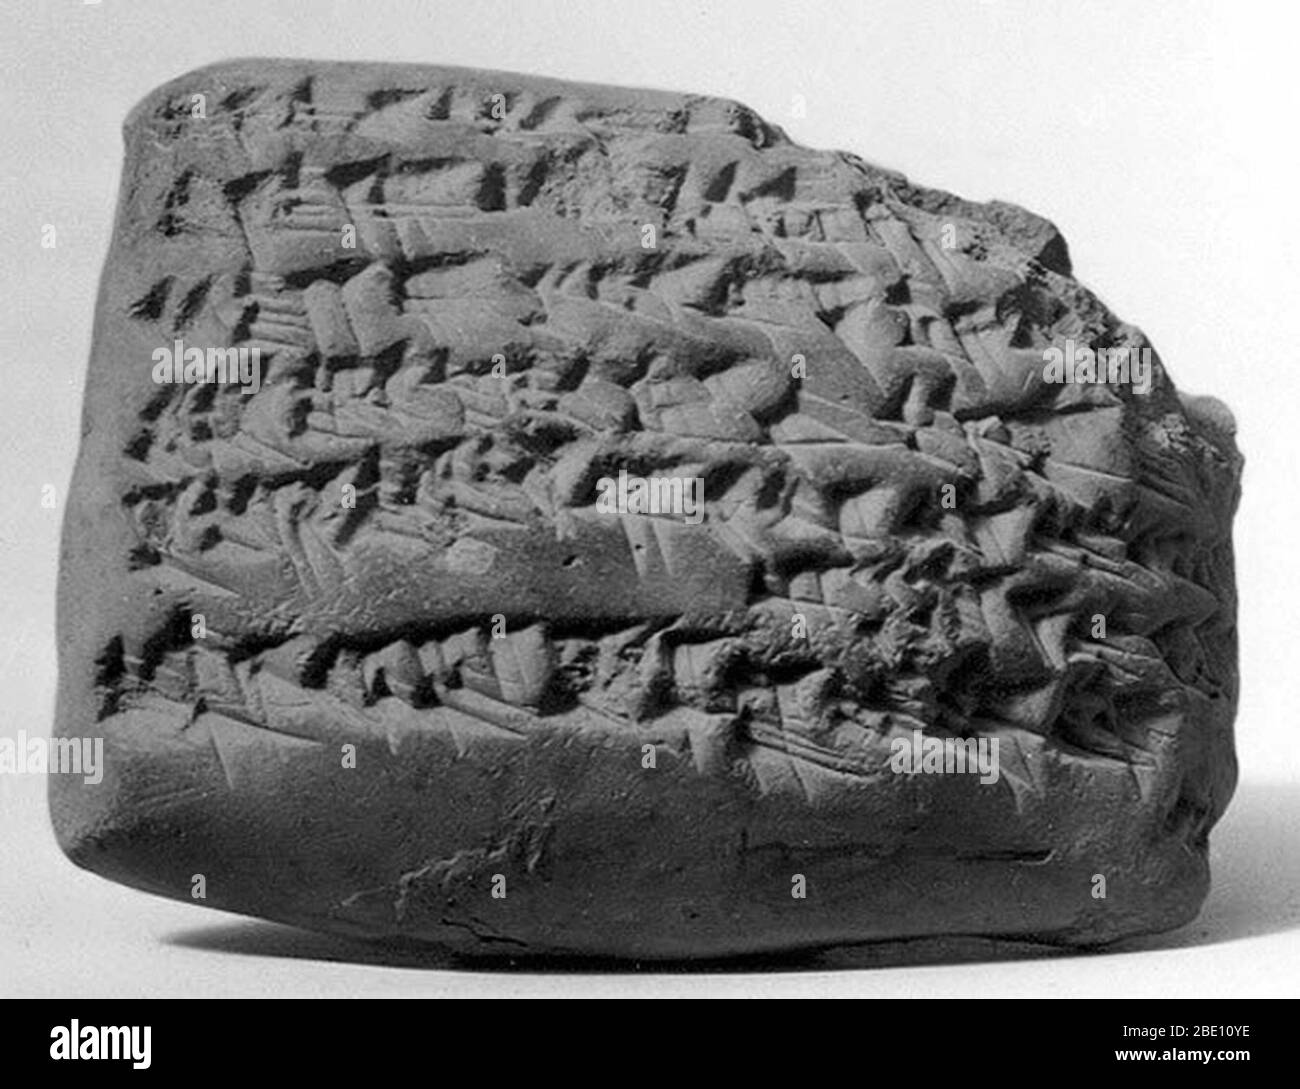 Tableta cuneiforme. Captación de Gula. Neo-babilónico o aqueménido, ca. Mediados a finales del primer milenio antes de Cristo probablemente de Sippar (moderno Tell Abu Habba) en Mesopotamia. Proto-cuneiform es el nombre dado a la forma más temprana de escritura -- pictogramas que fueron dibujados en tablas de arcilla. Gradualmente, los pictogramas se abstrajeron en señales cuneiformes (latinas, 'en forma de cuña') que fueron impresionados en lugar de dibujadas. En su mayor medida, la escritura cuneiforme fue utilizada desde la costa mediterránea de Siria hasta el oeste de Irán y desde Anatolia hitita hasta el sur de Mesopotamia. Fue adaptado para escribir al menos cincuenta Foto de stock